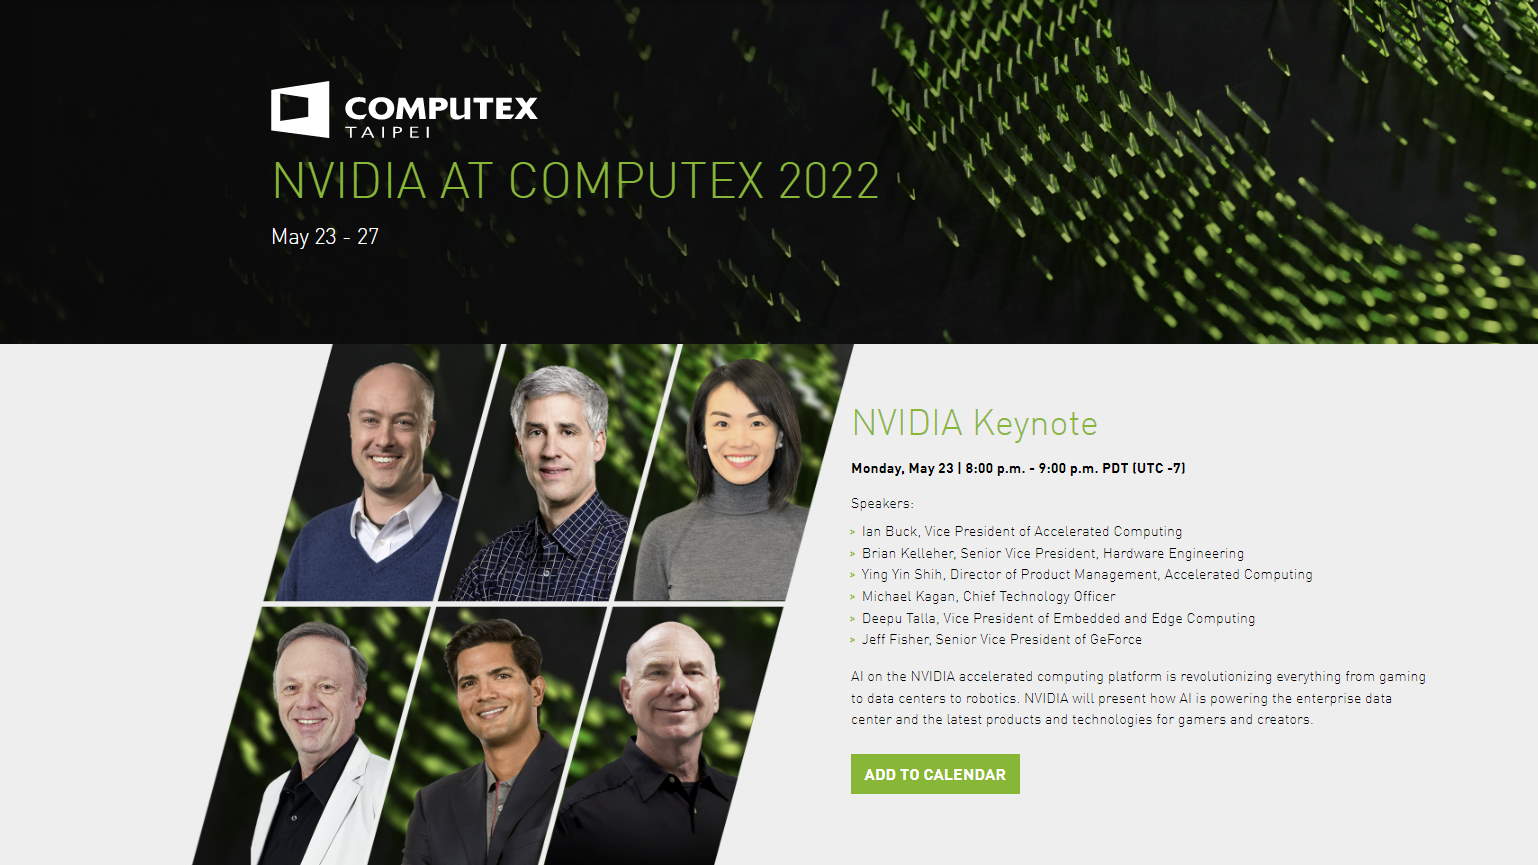 Nvidia keynote details at Computex